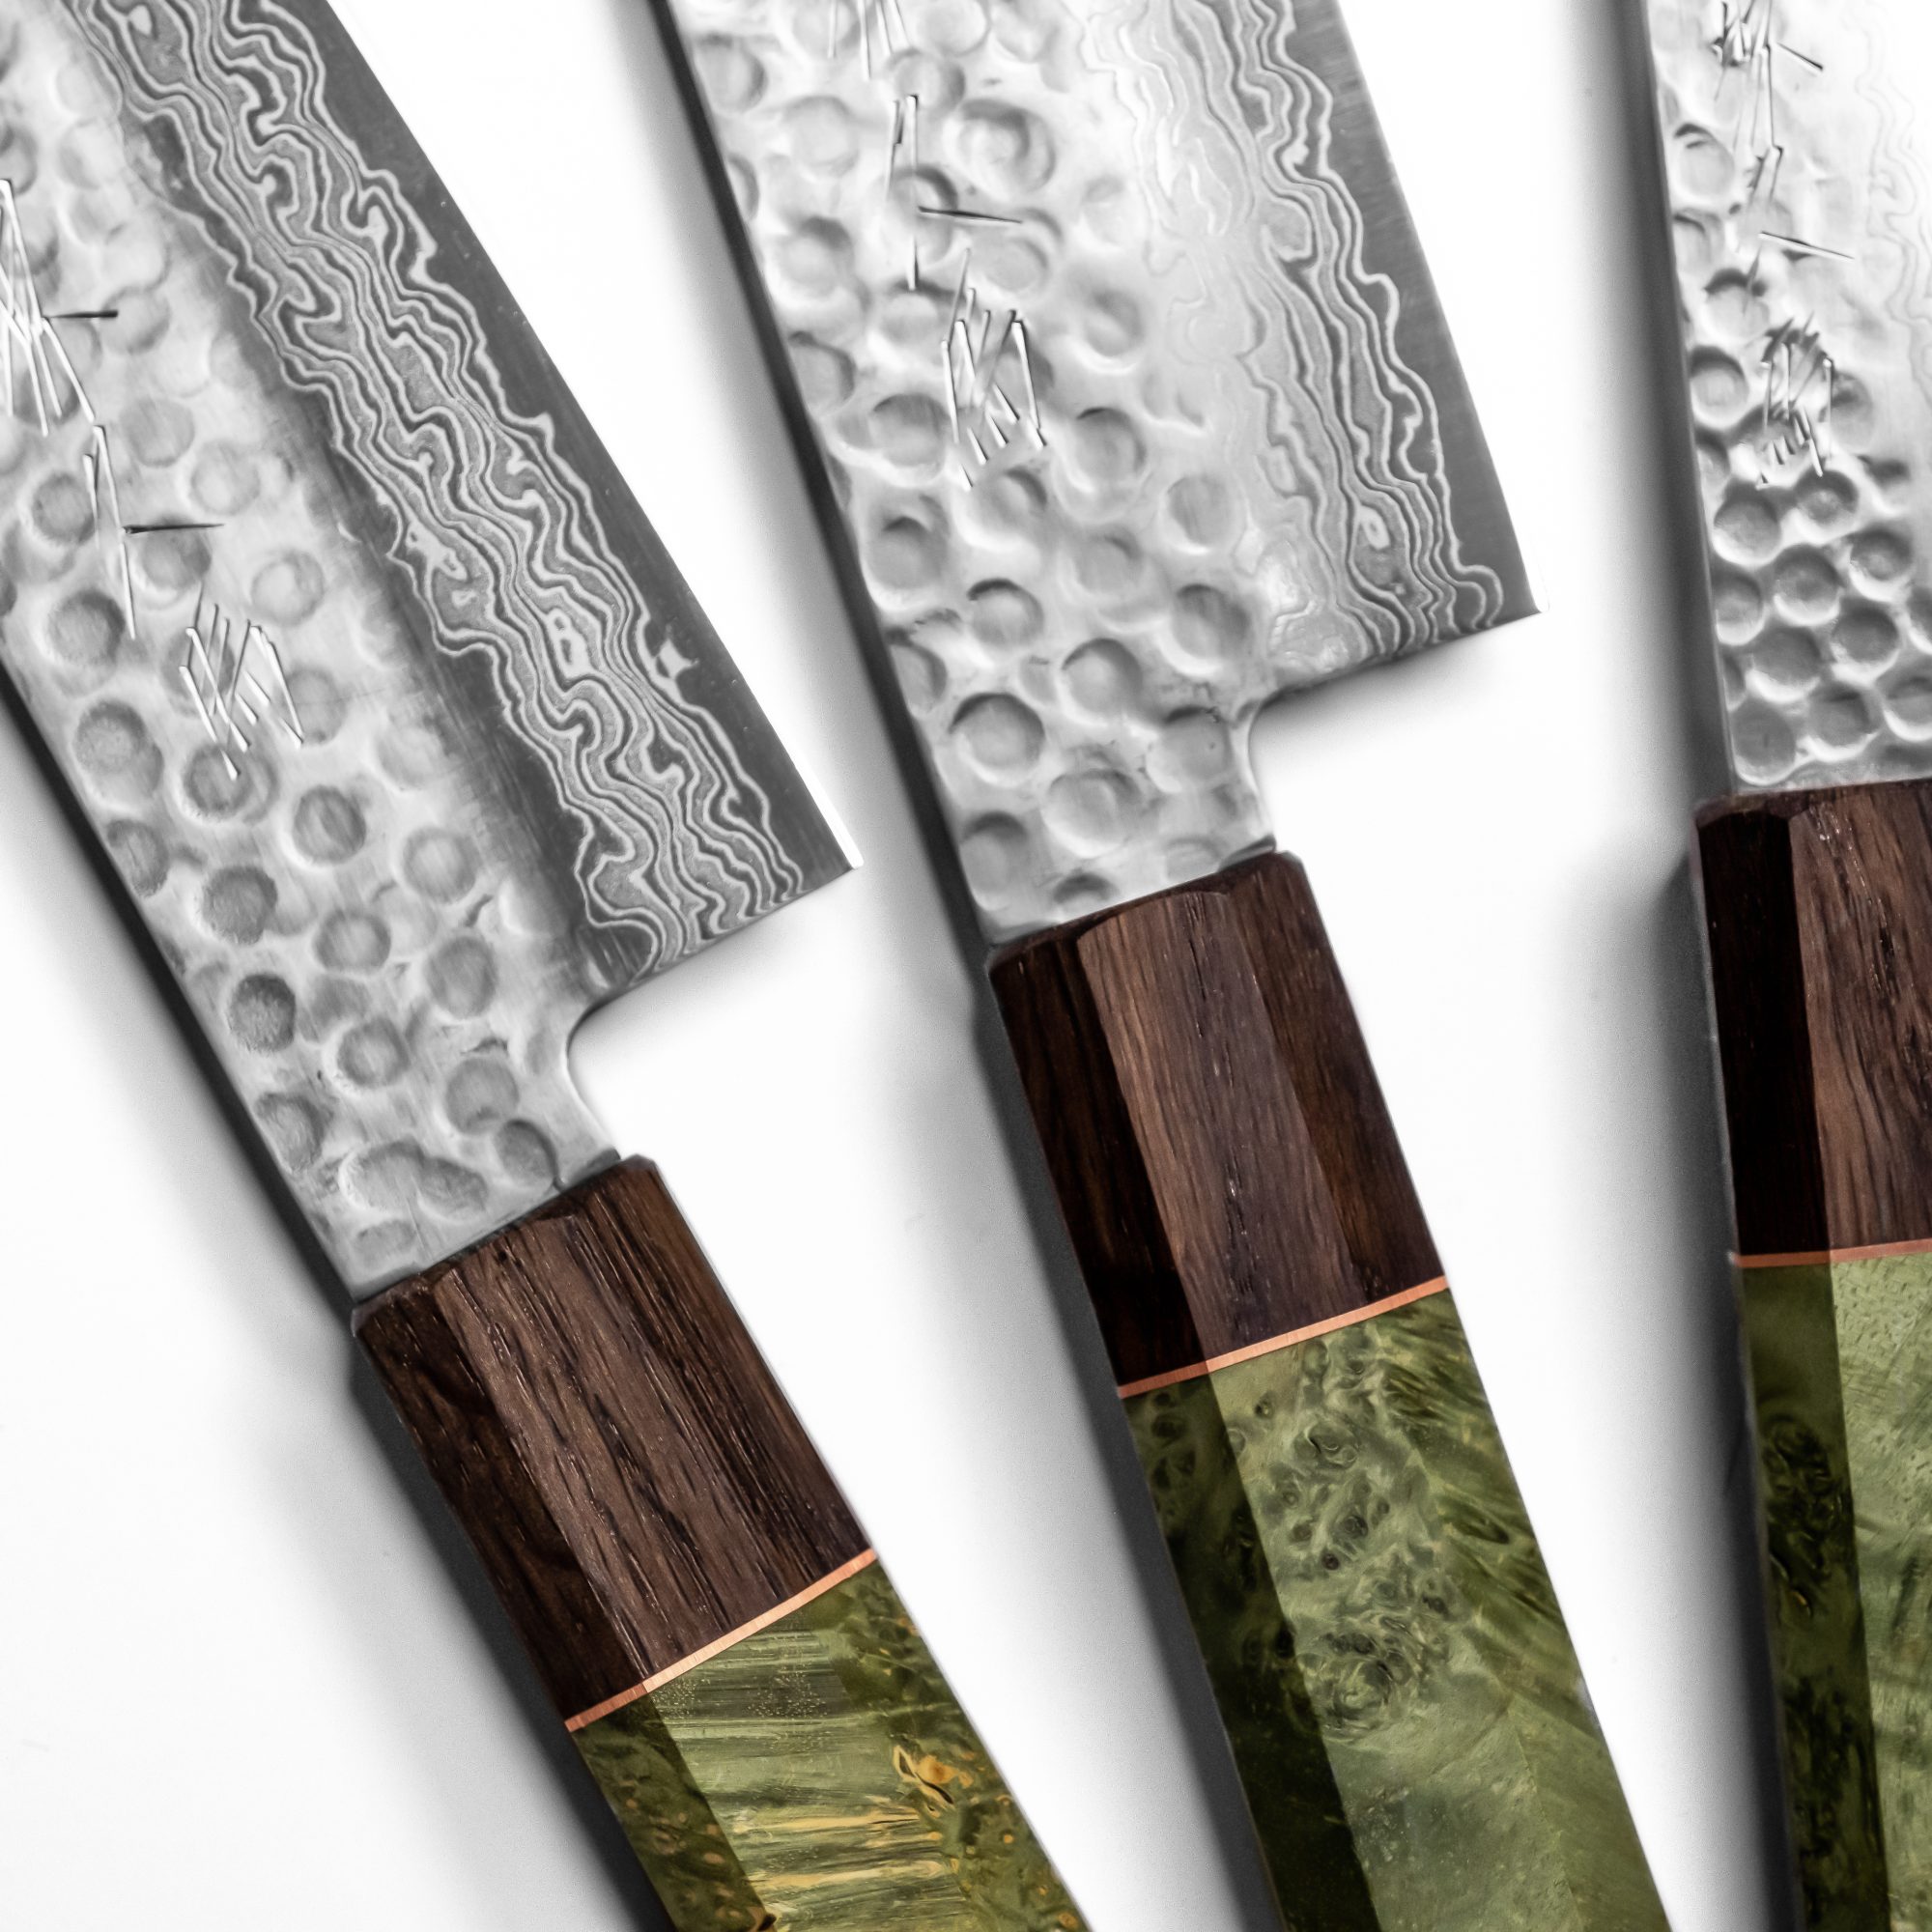 10 Stück Edelstahl Küchenmesser Set Damaskus Muster Messer Kochmesser Messerset